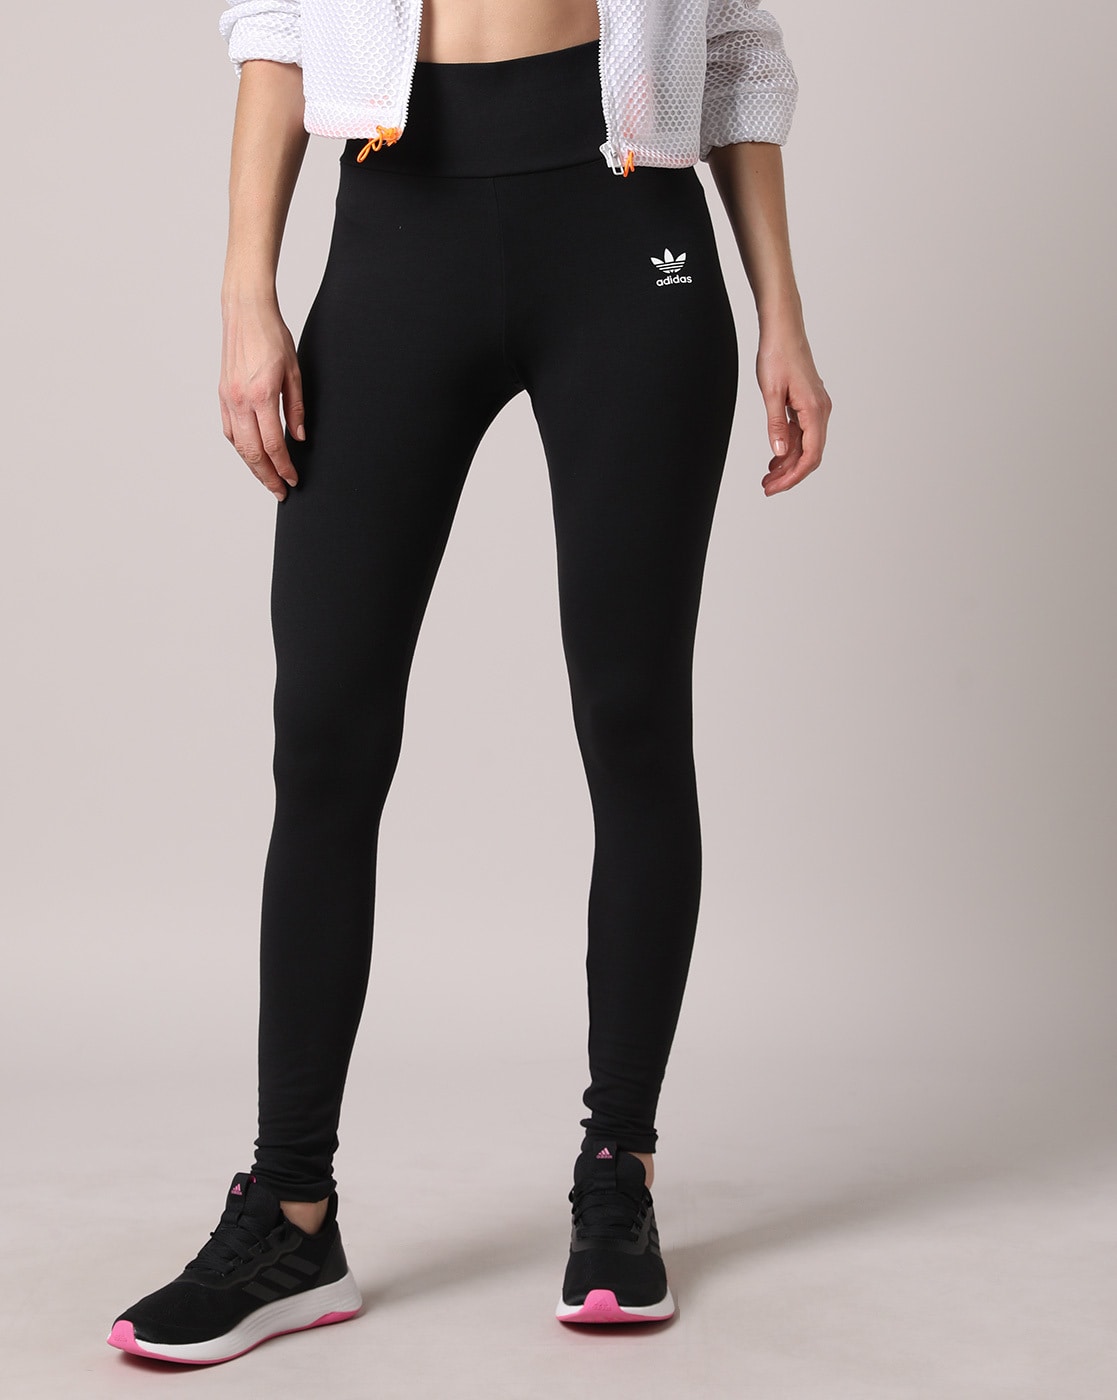 Buy Black for Women by Adidas Originals Online | Ajio.com